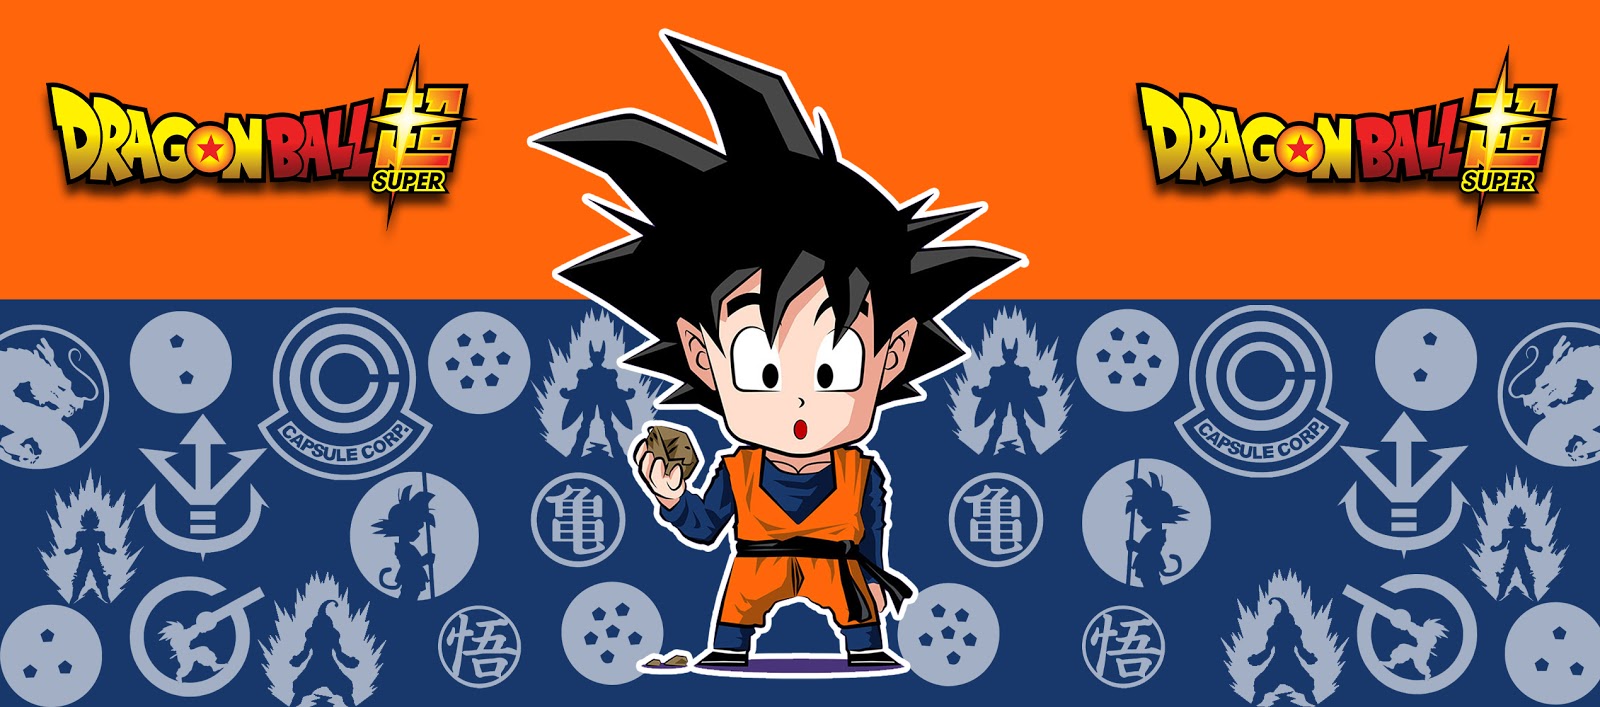 Caneca Xícara Dragon Ball Z Goku E Personagens Do Desenho